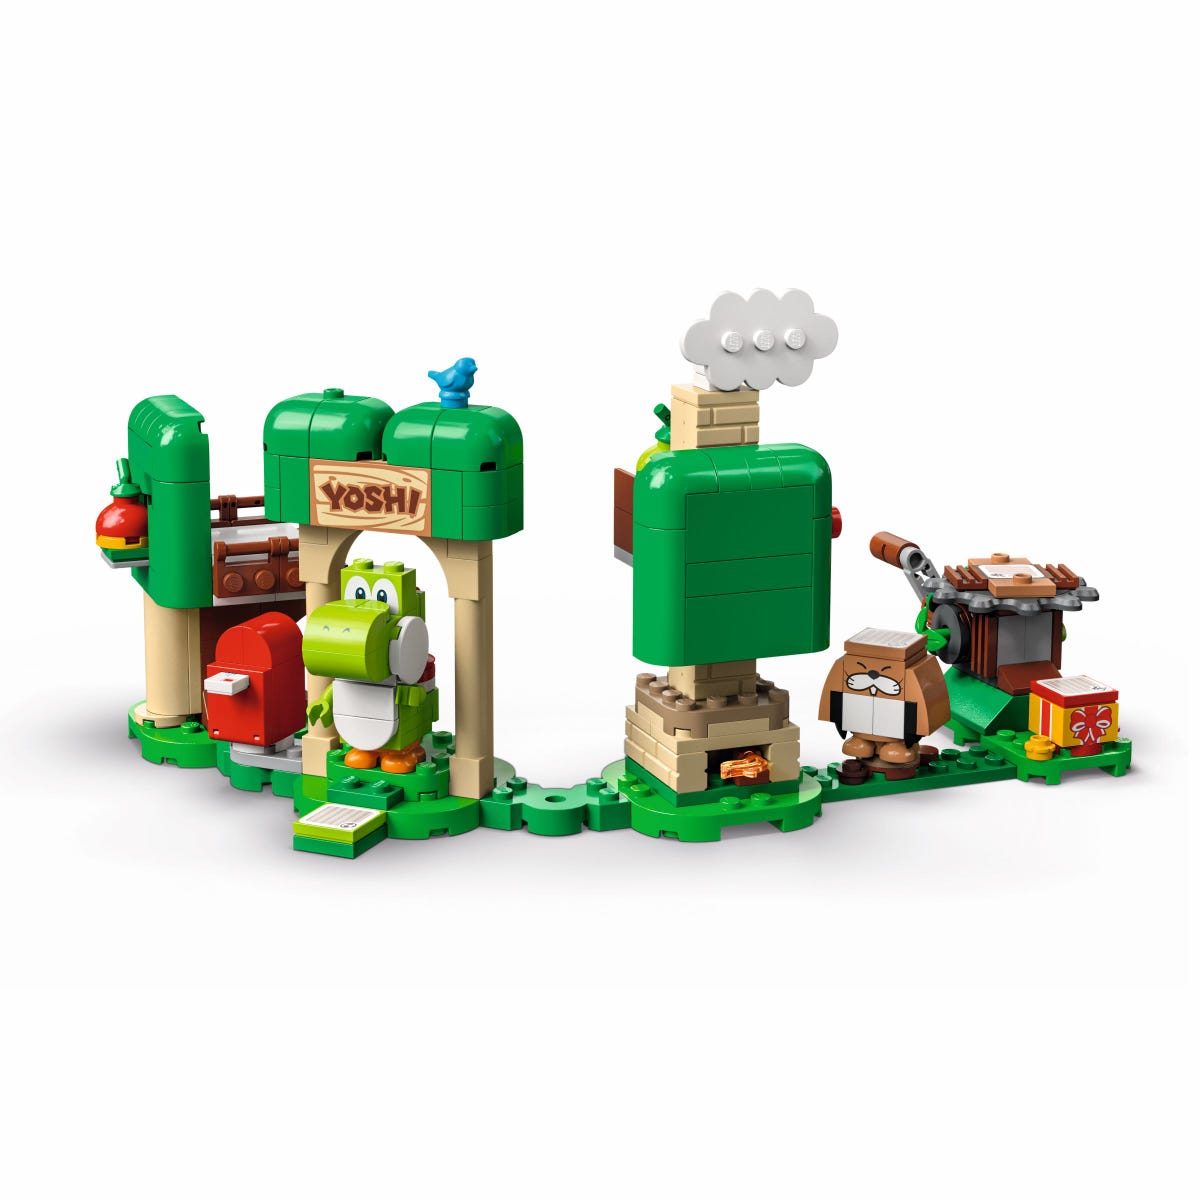 LEGO Super Mario Set de Expansion: Casa regalo de Yoshi 71406